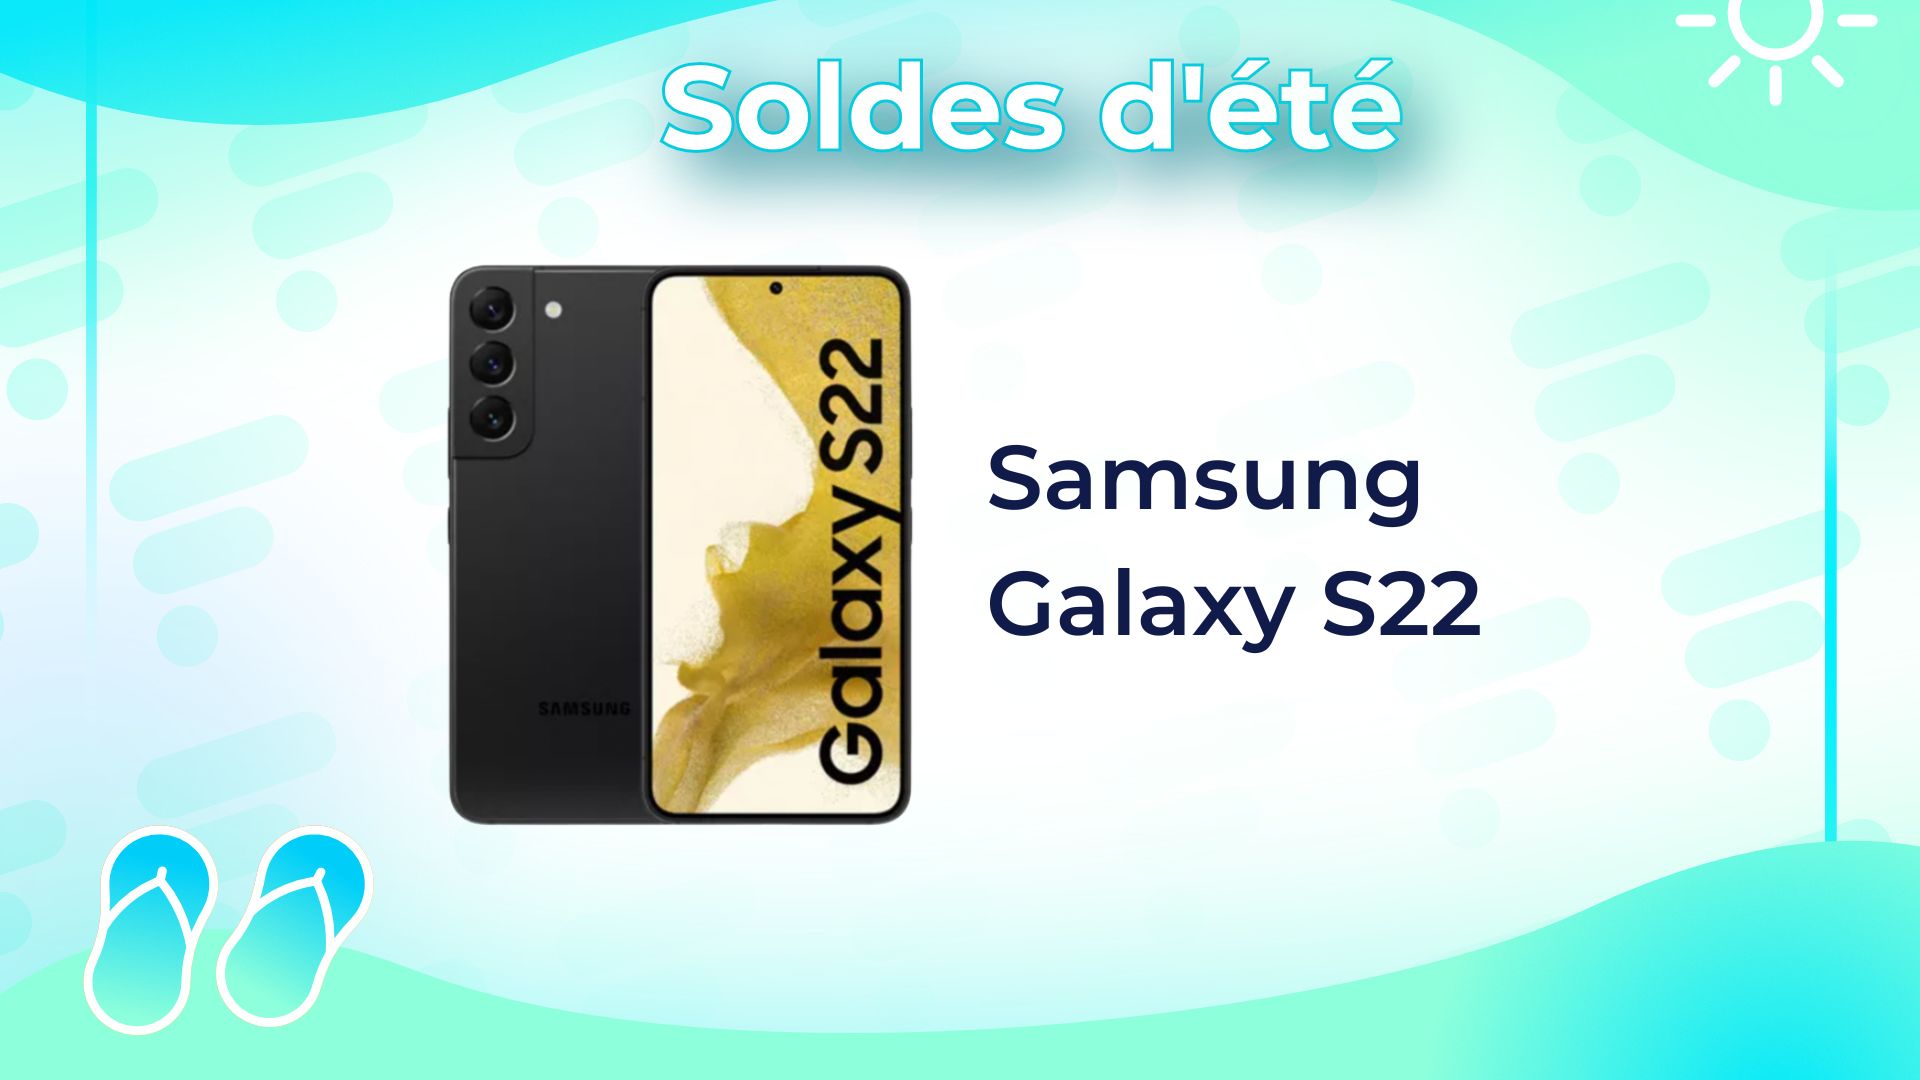 Samsung Galaxy S22 : cet ancien fleuron chute à prix totalement